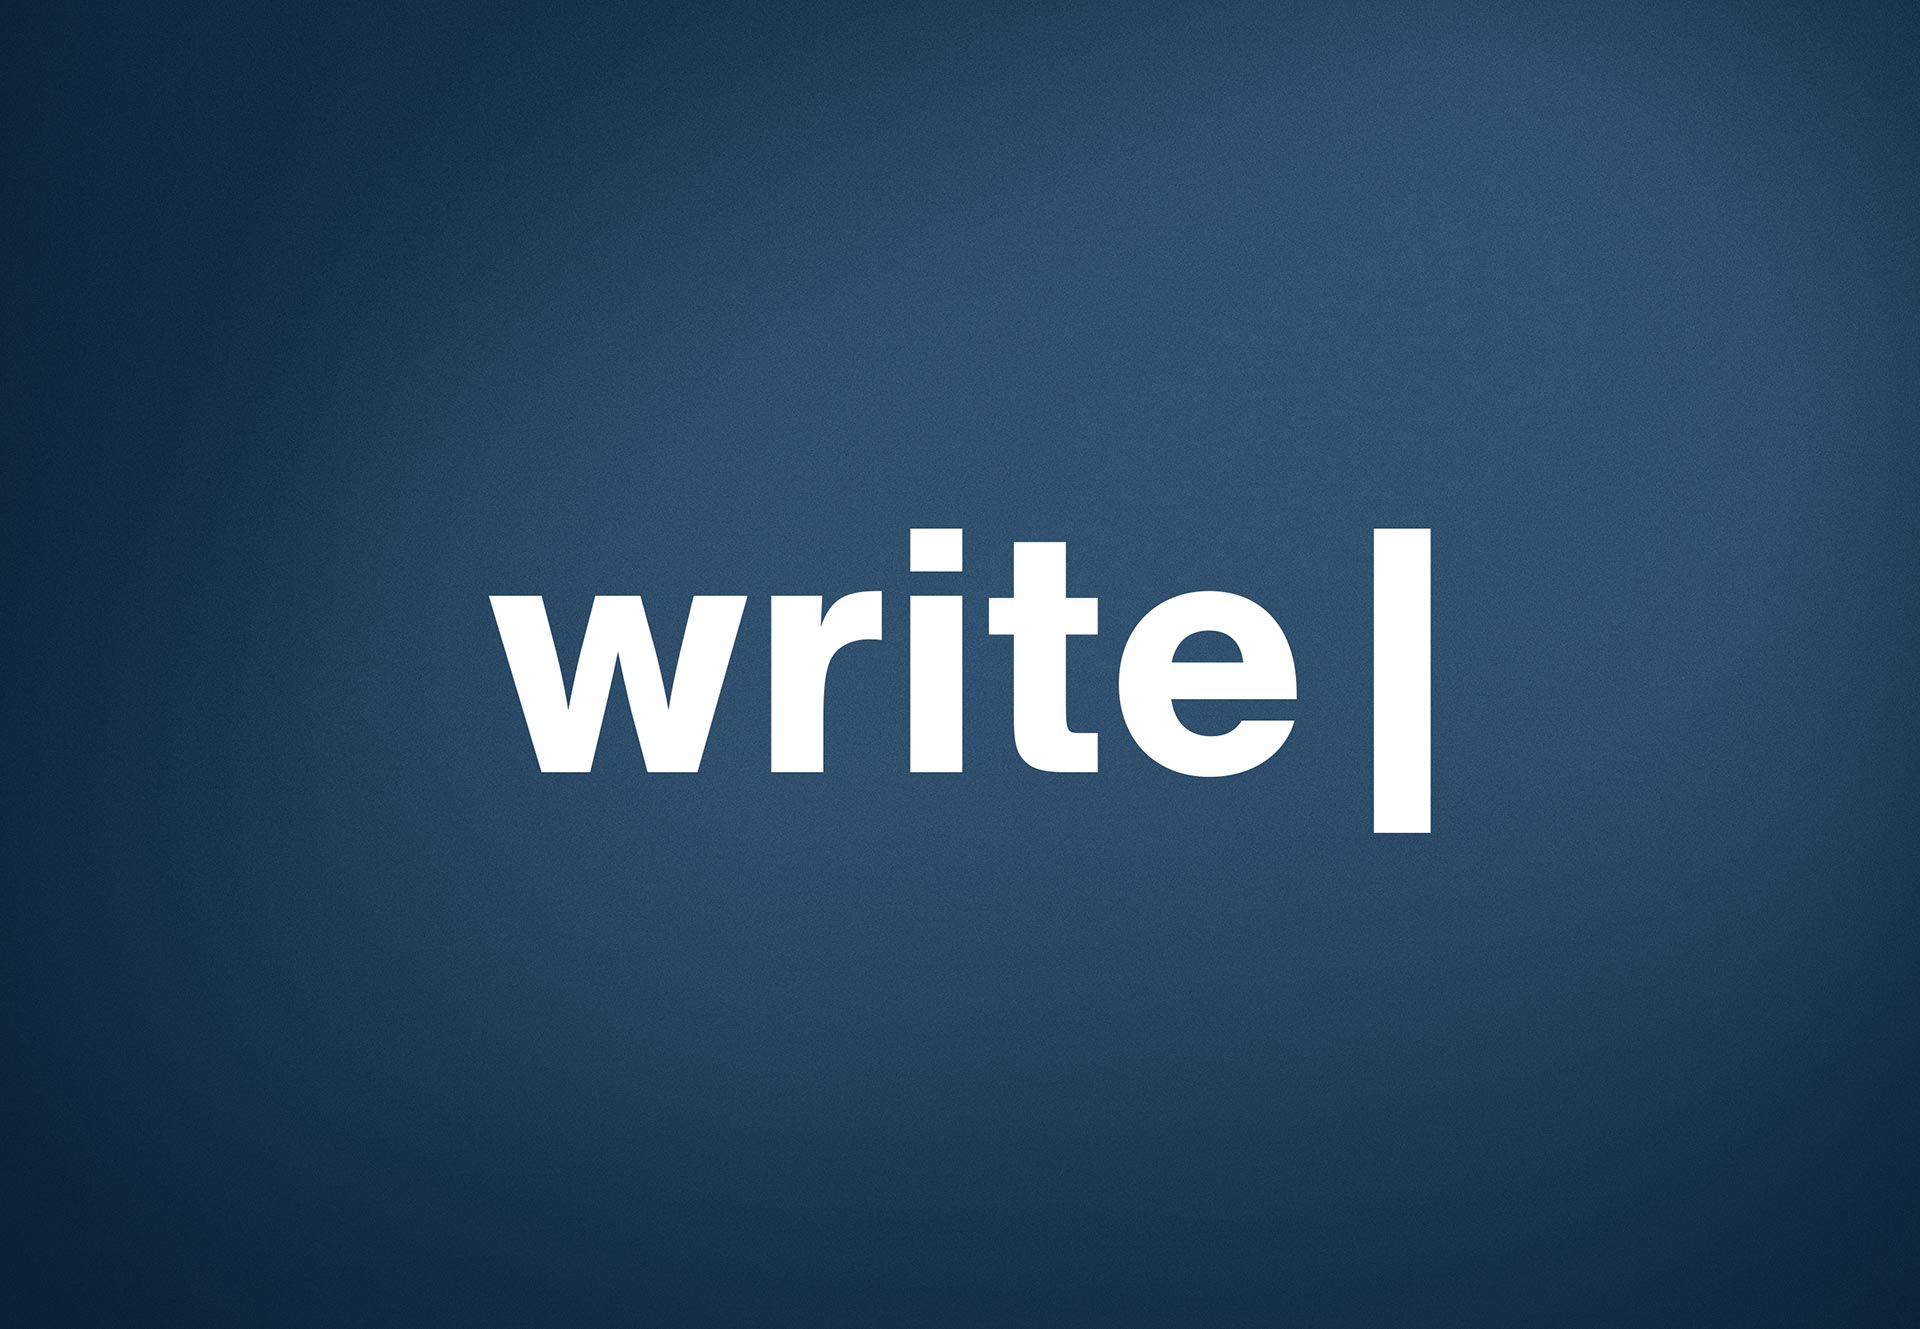 Logo Design for Write